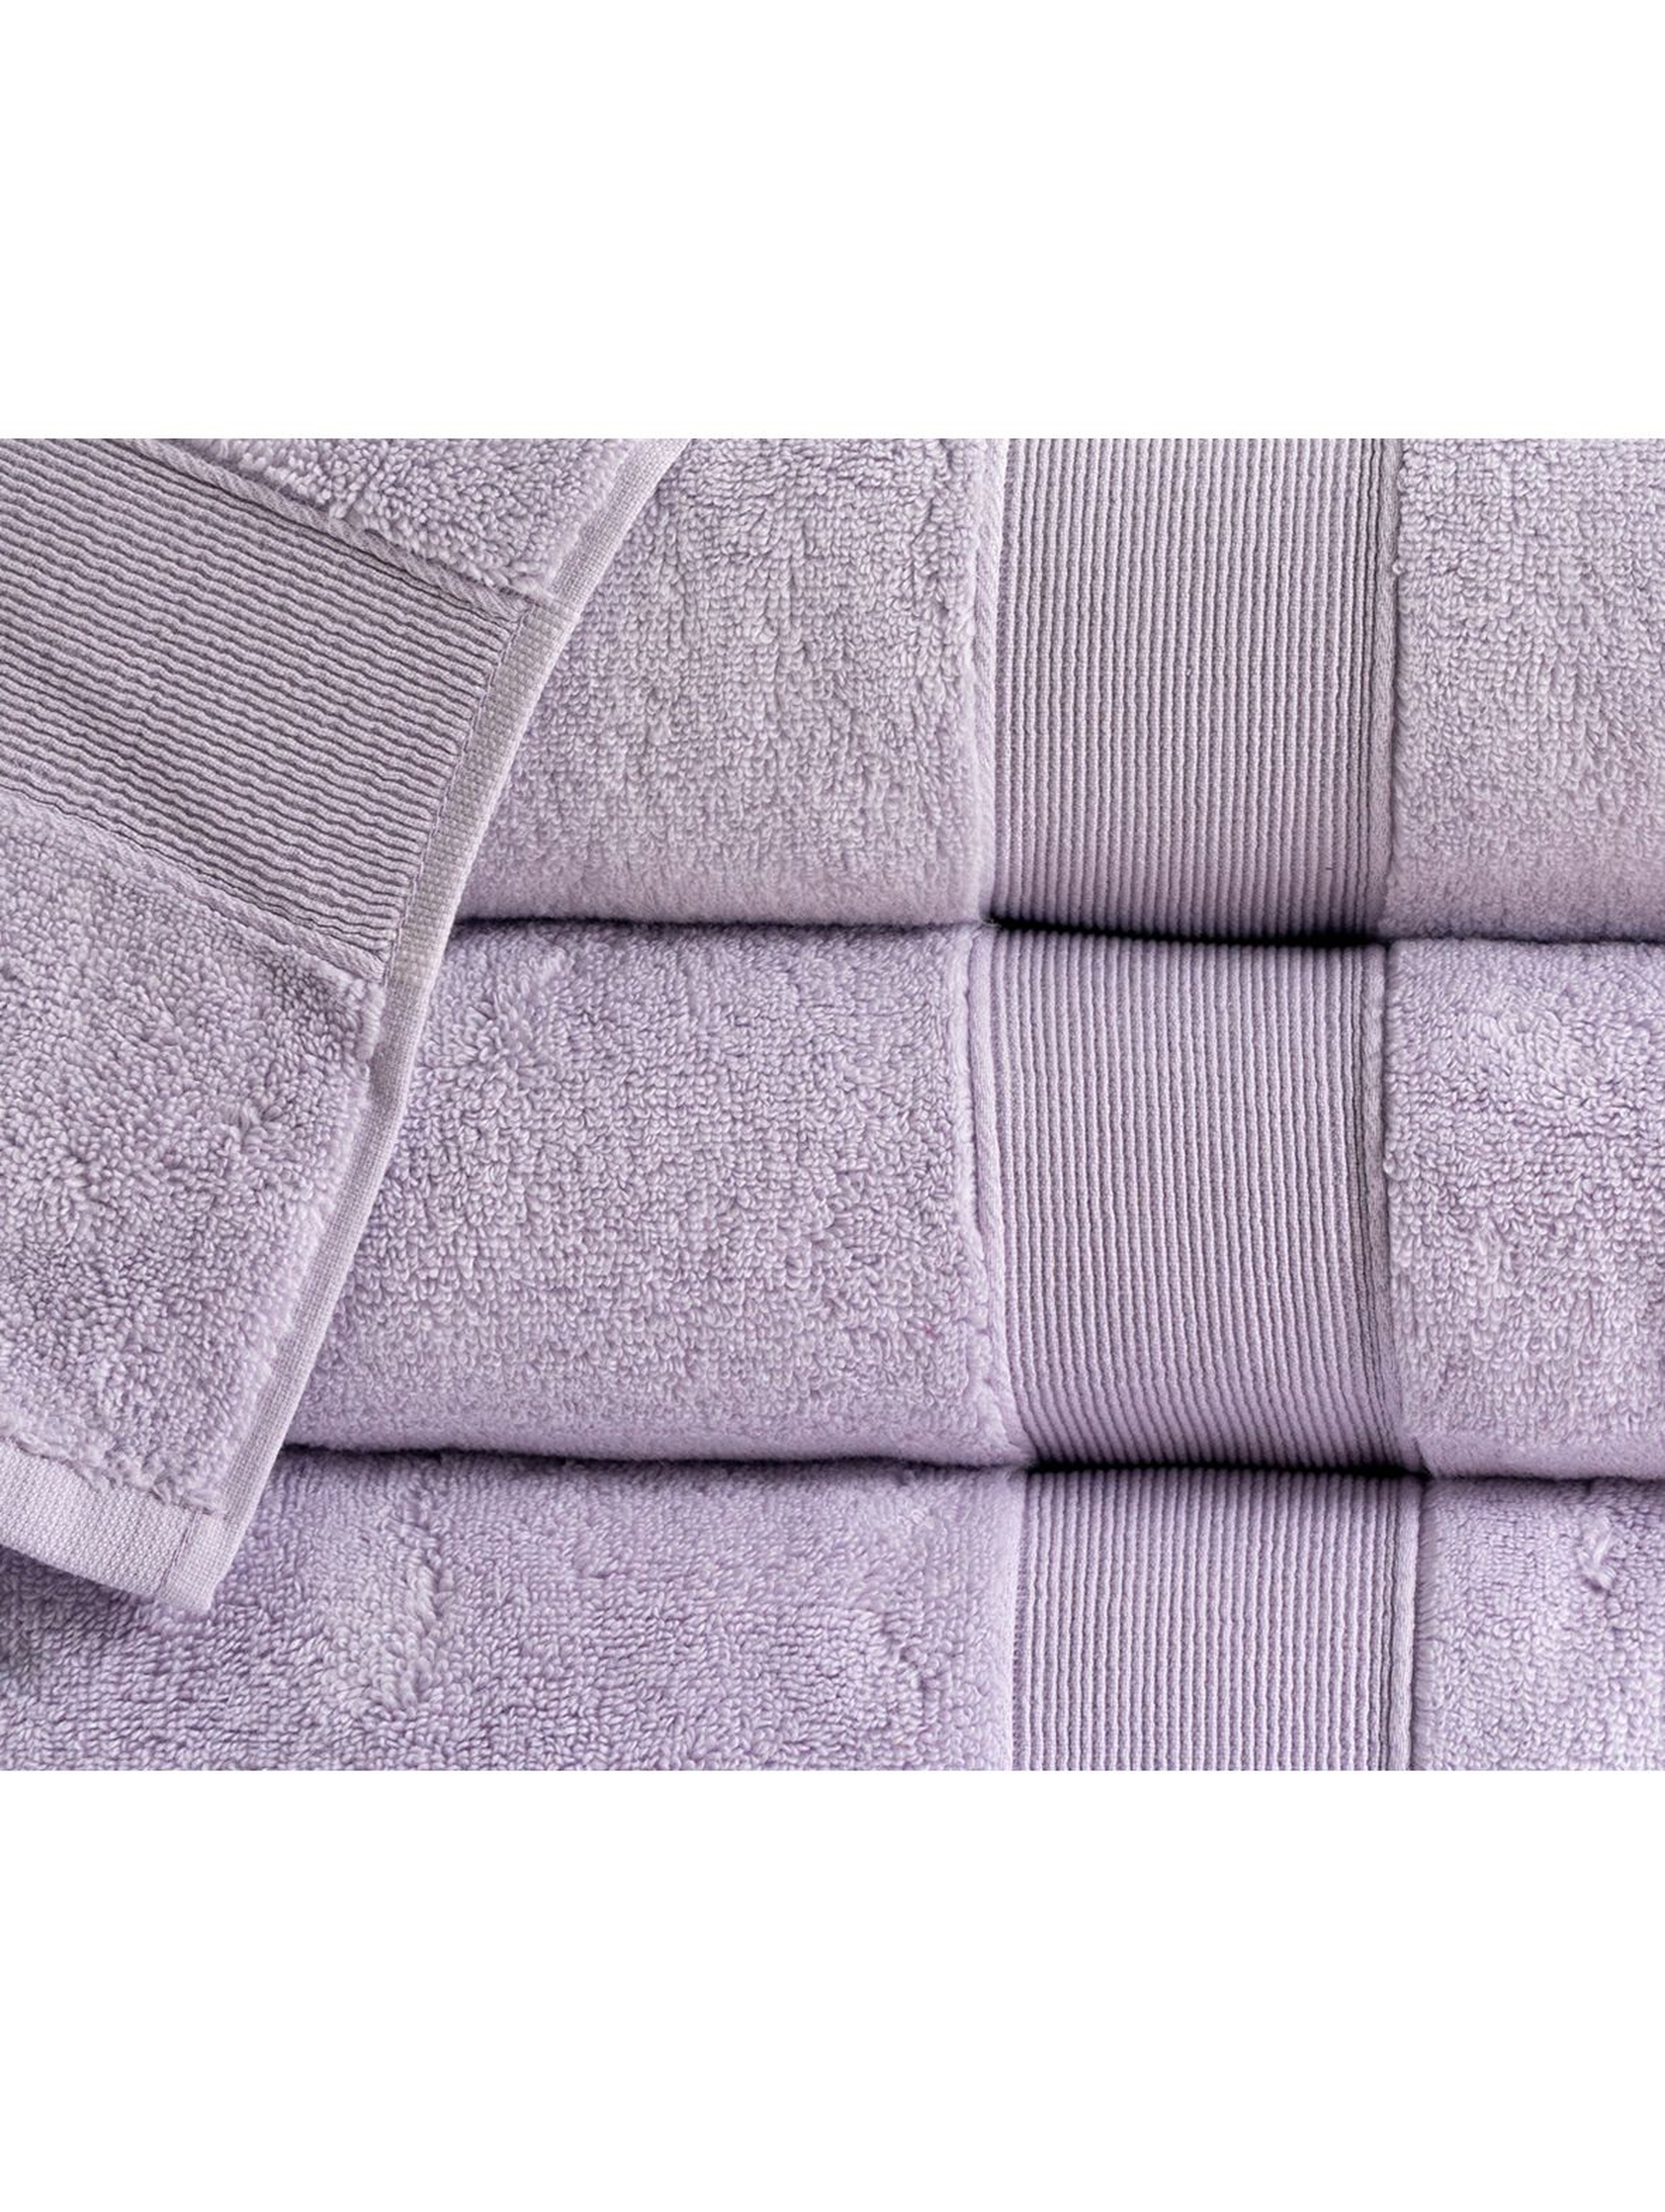 Bawełniany ręcznik ROCCO - fioletowy 50x90cm